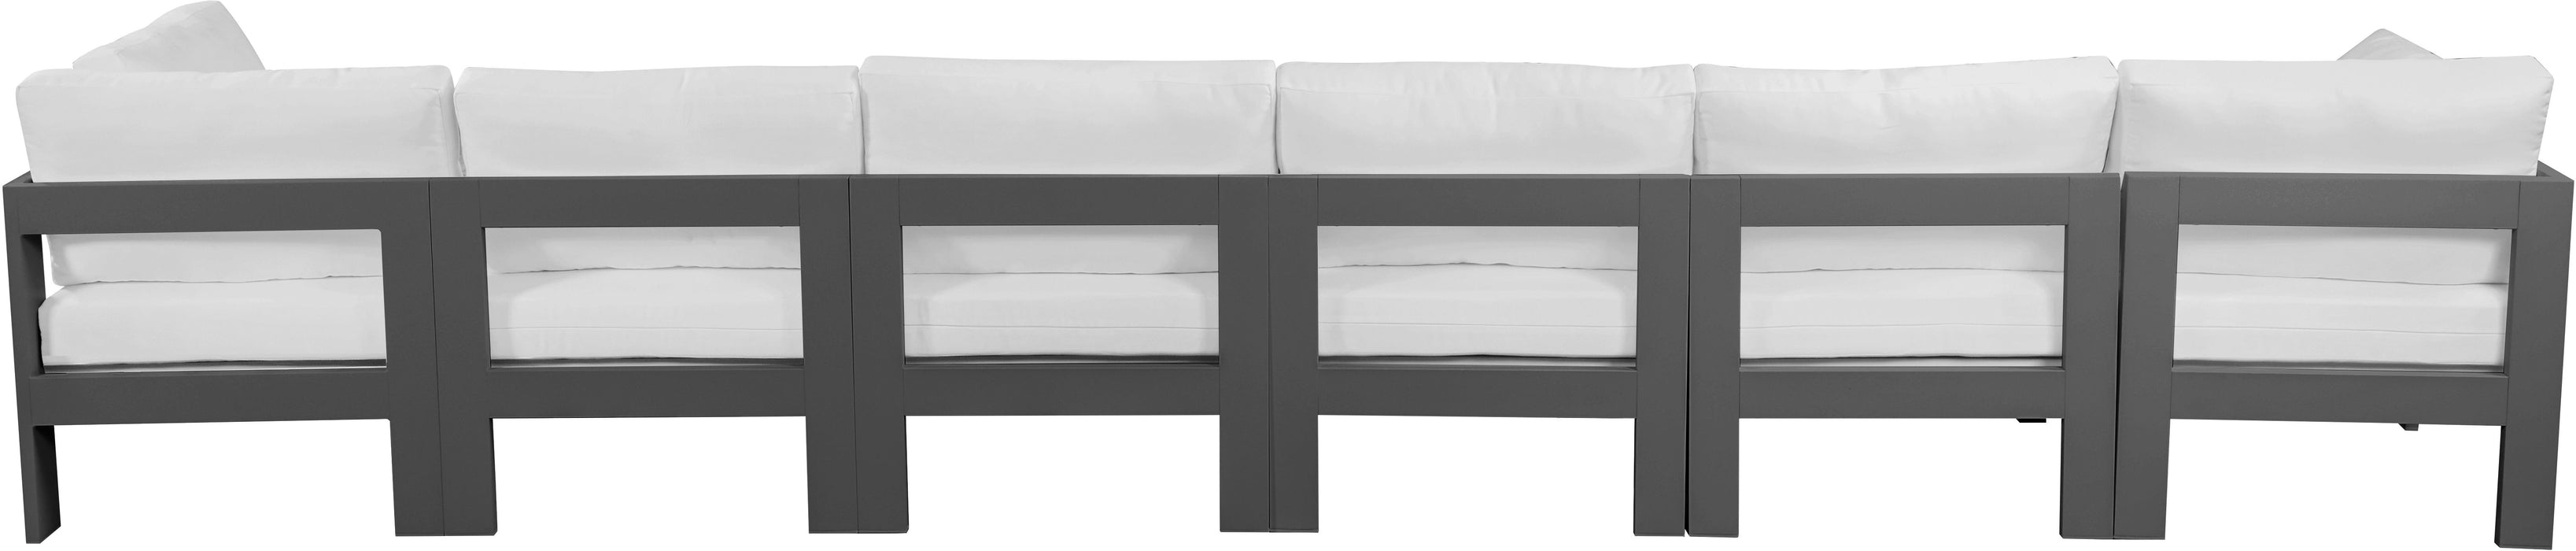 Nizuc - Outdoor Patio Modular Sofa With Frame - White